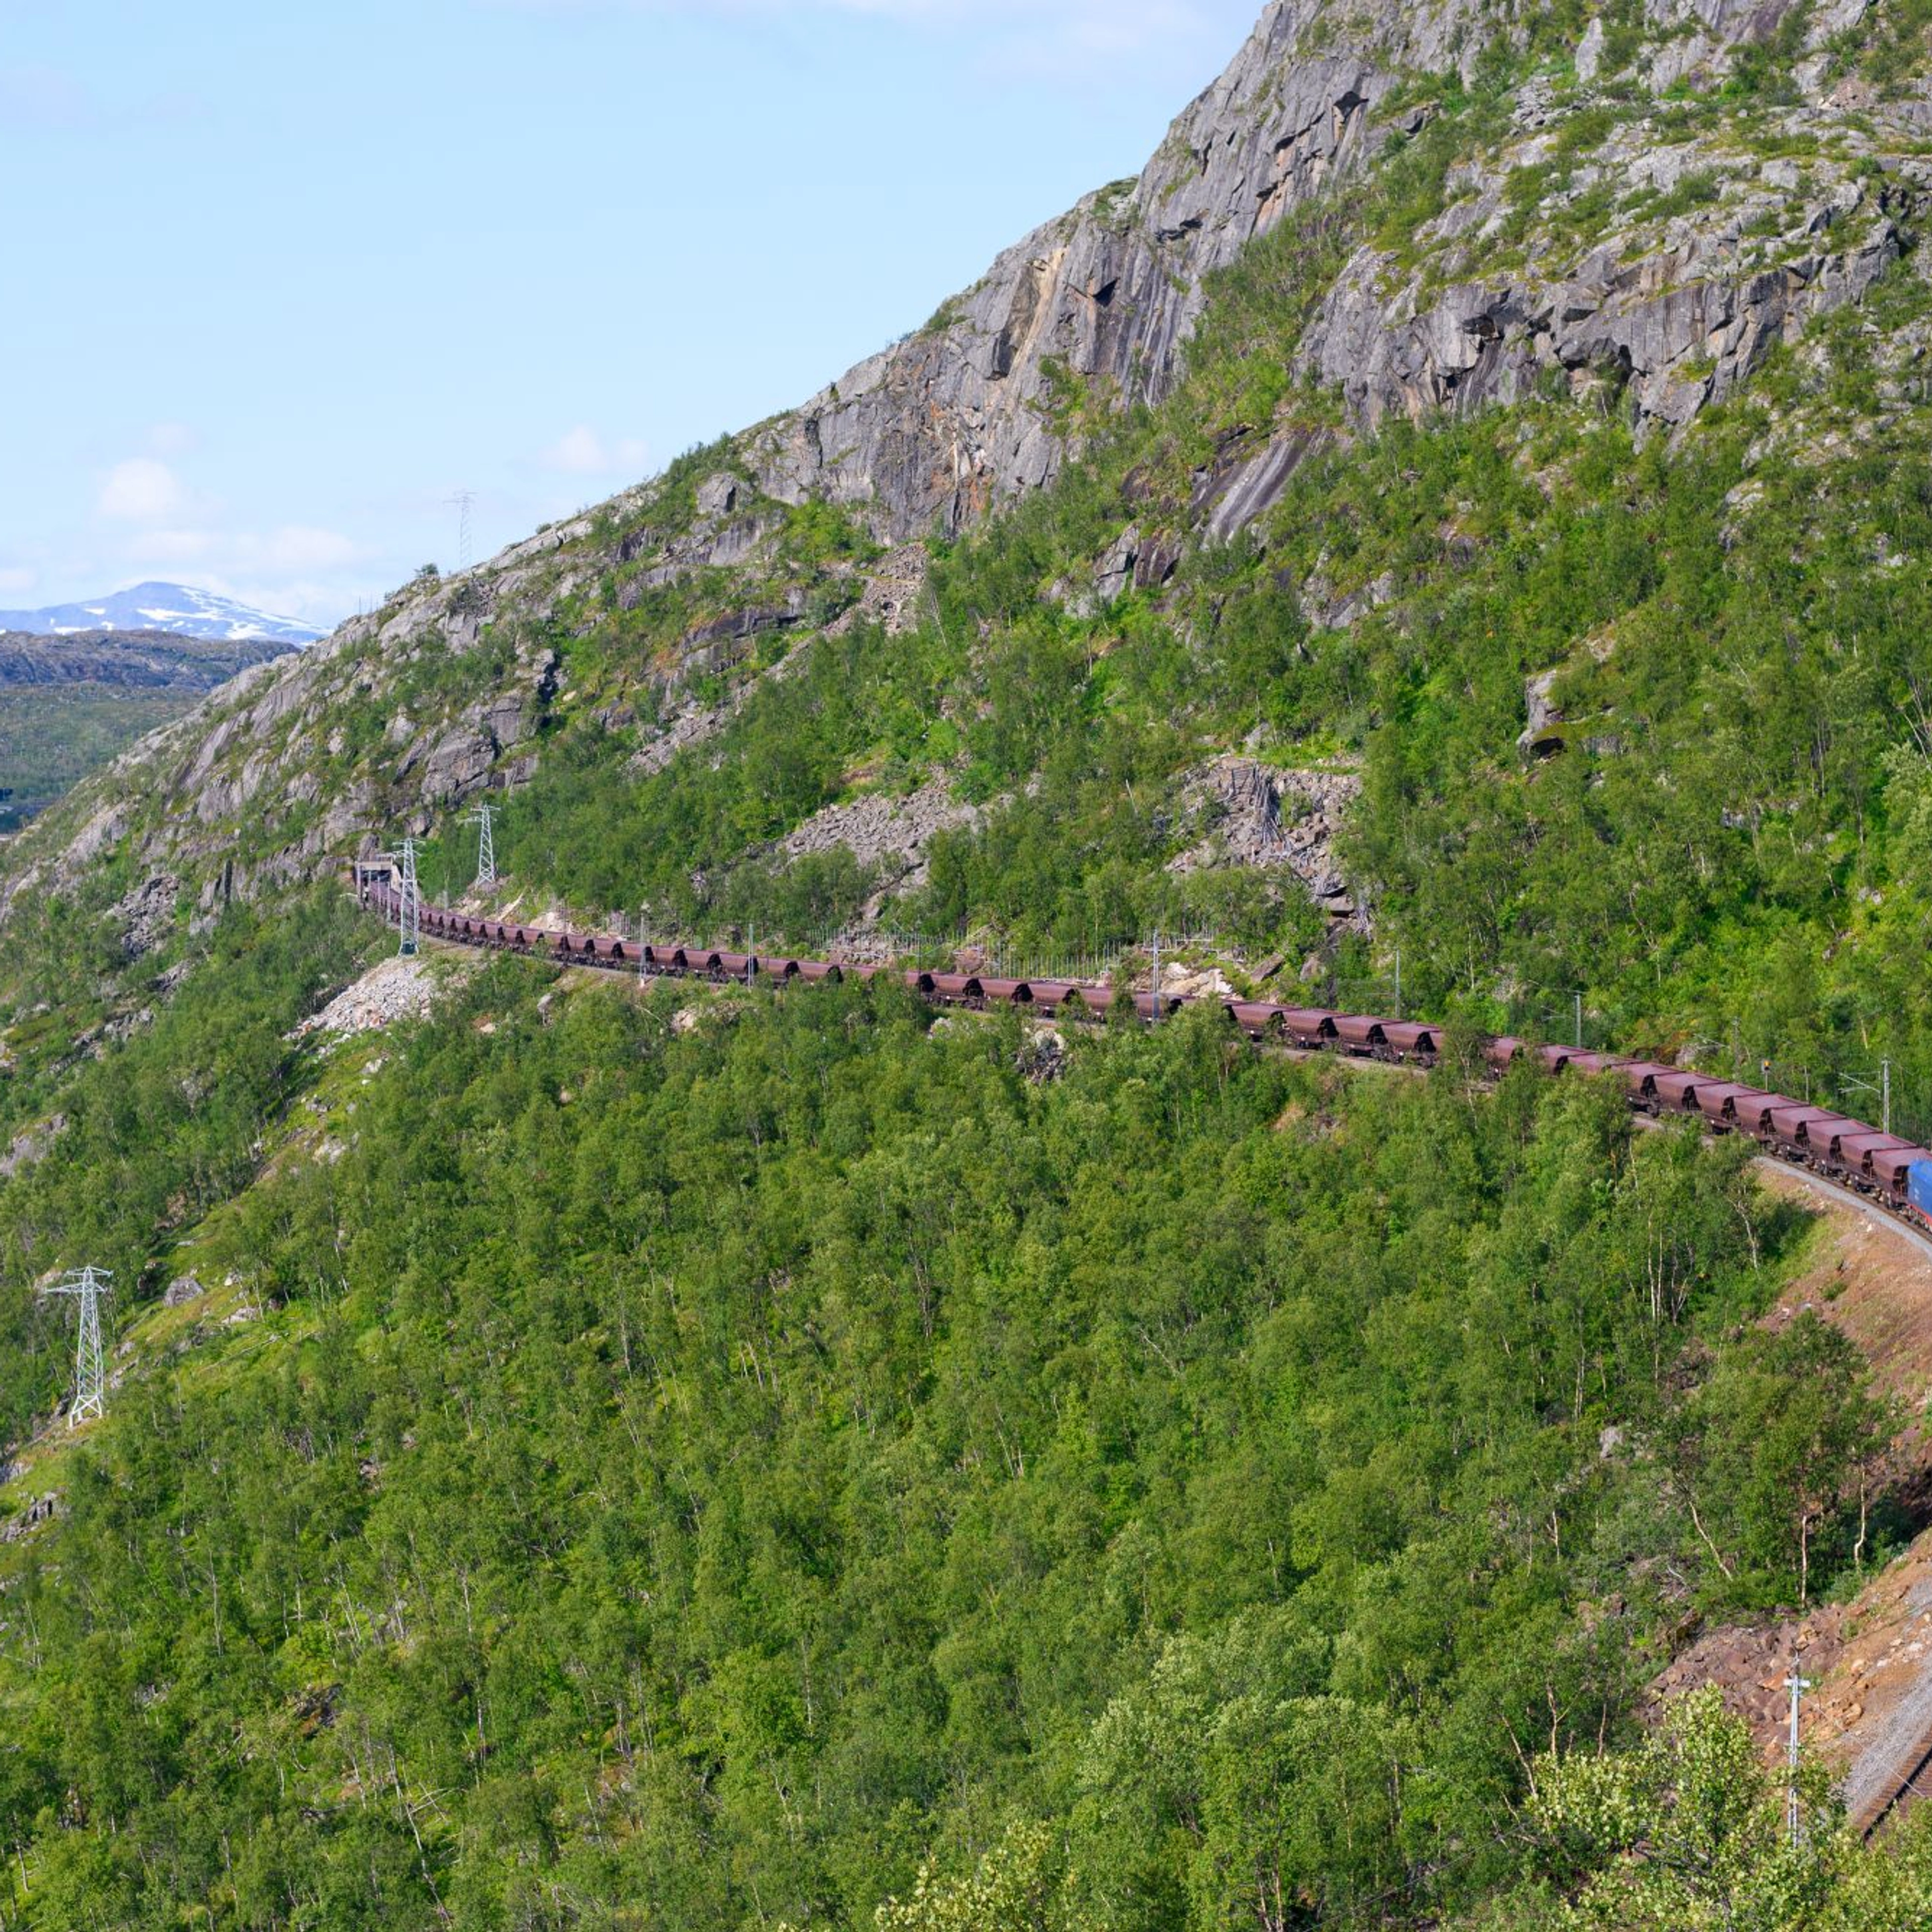 Ofot Railway Line - Narvik, Norway